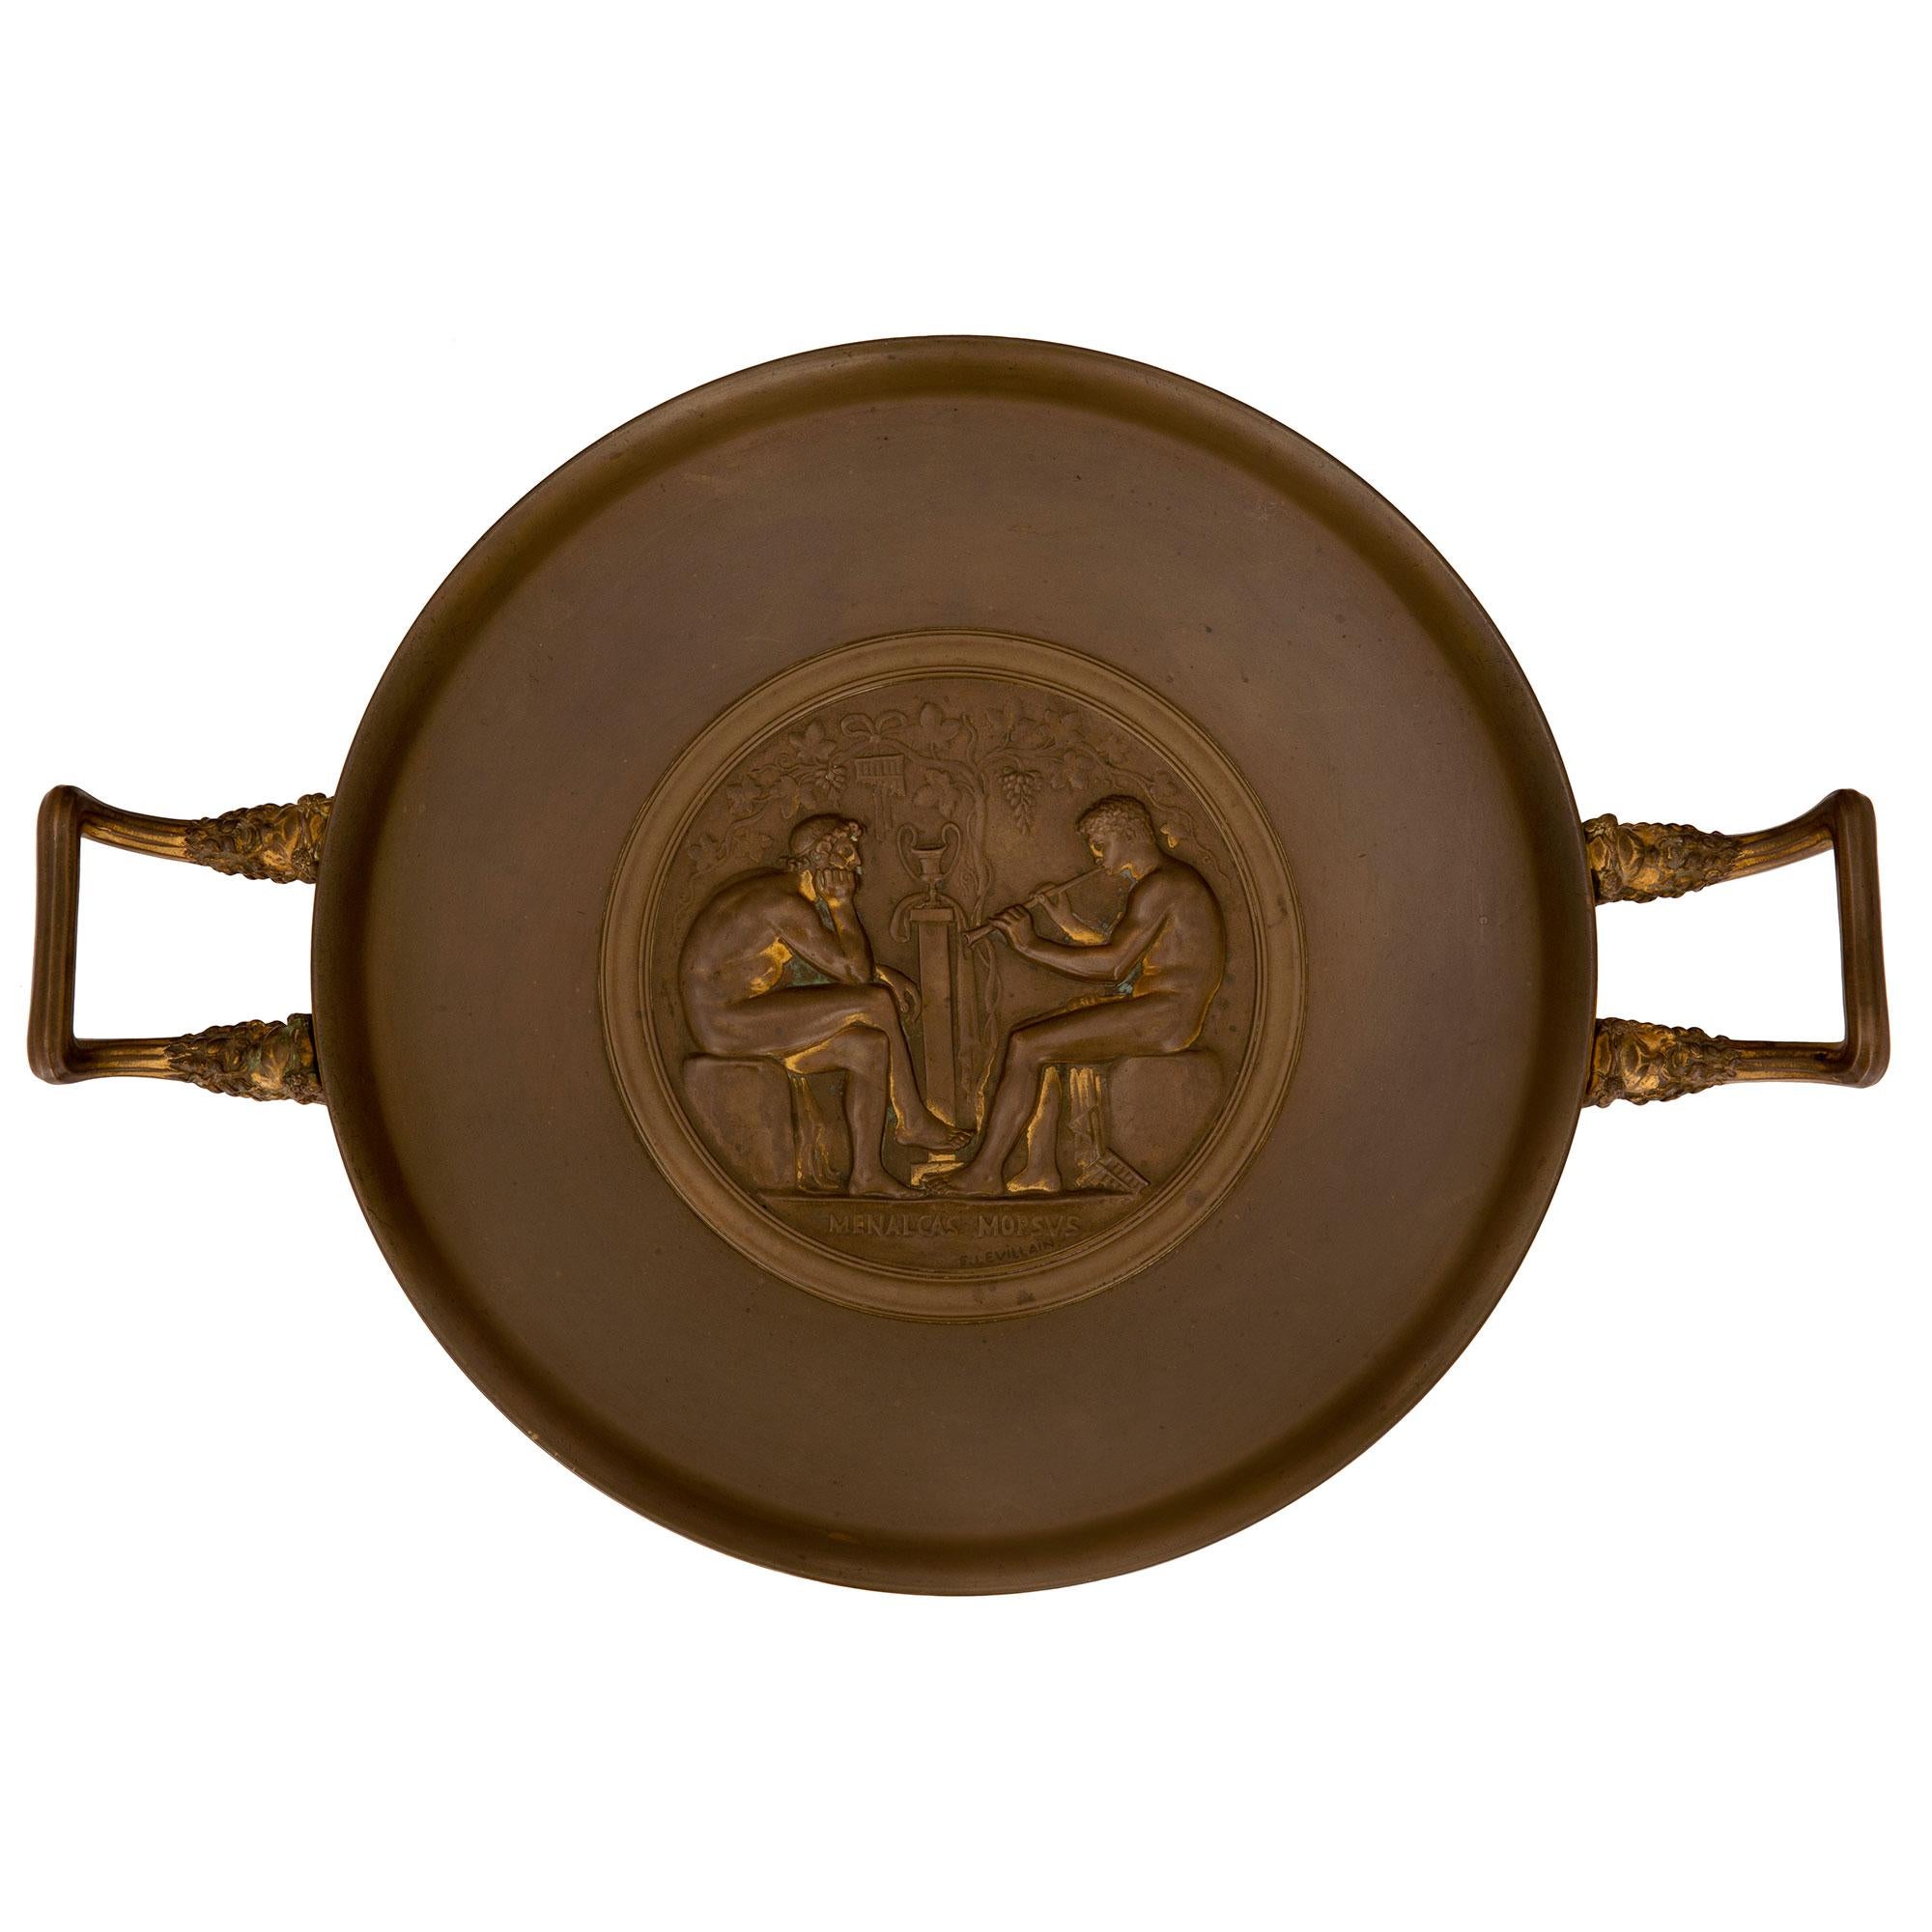 Eine elegante französische neoklassizistische Bronze-Tazza aus dem 19. Jahrhundert, signiert F. Levillain, patiniert. Die Tazza wird von einem feinen, runden Sockel mit einem glatten, abgestuften Muster getragen. In der Mitte der runden Schale